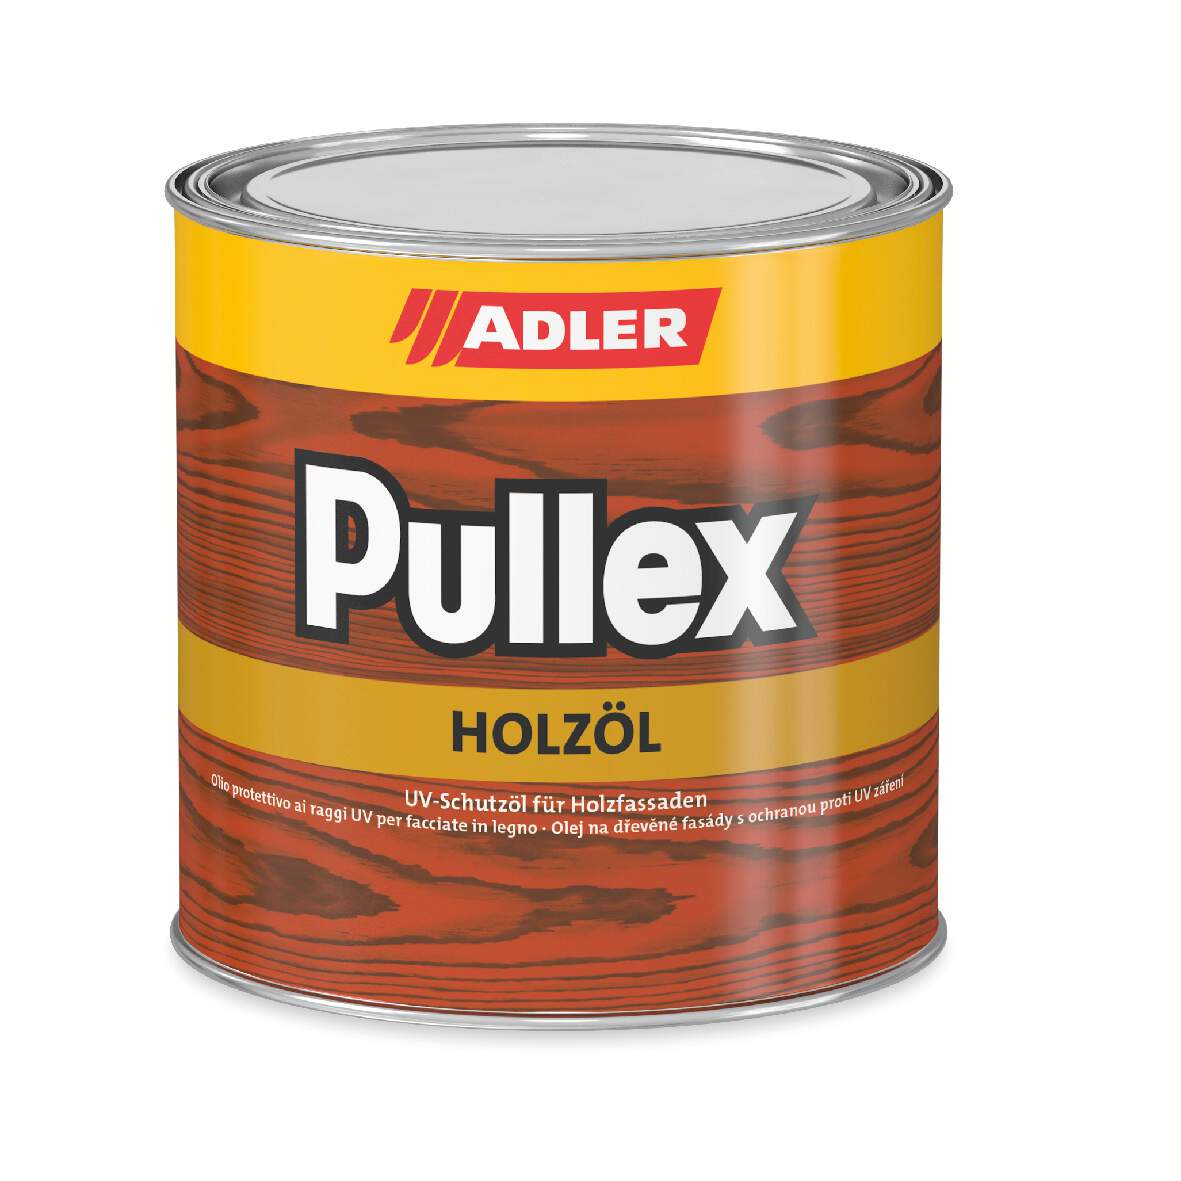 1122503 - Pullex-Holzöl